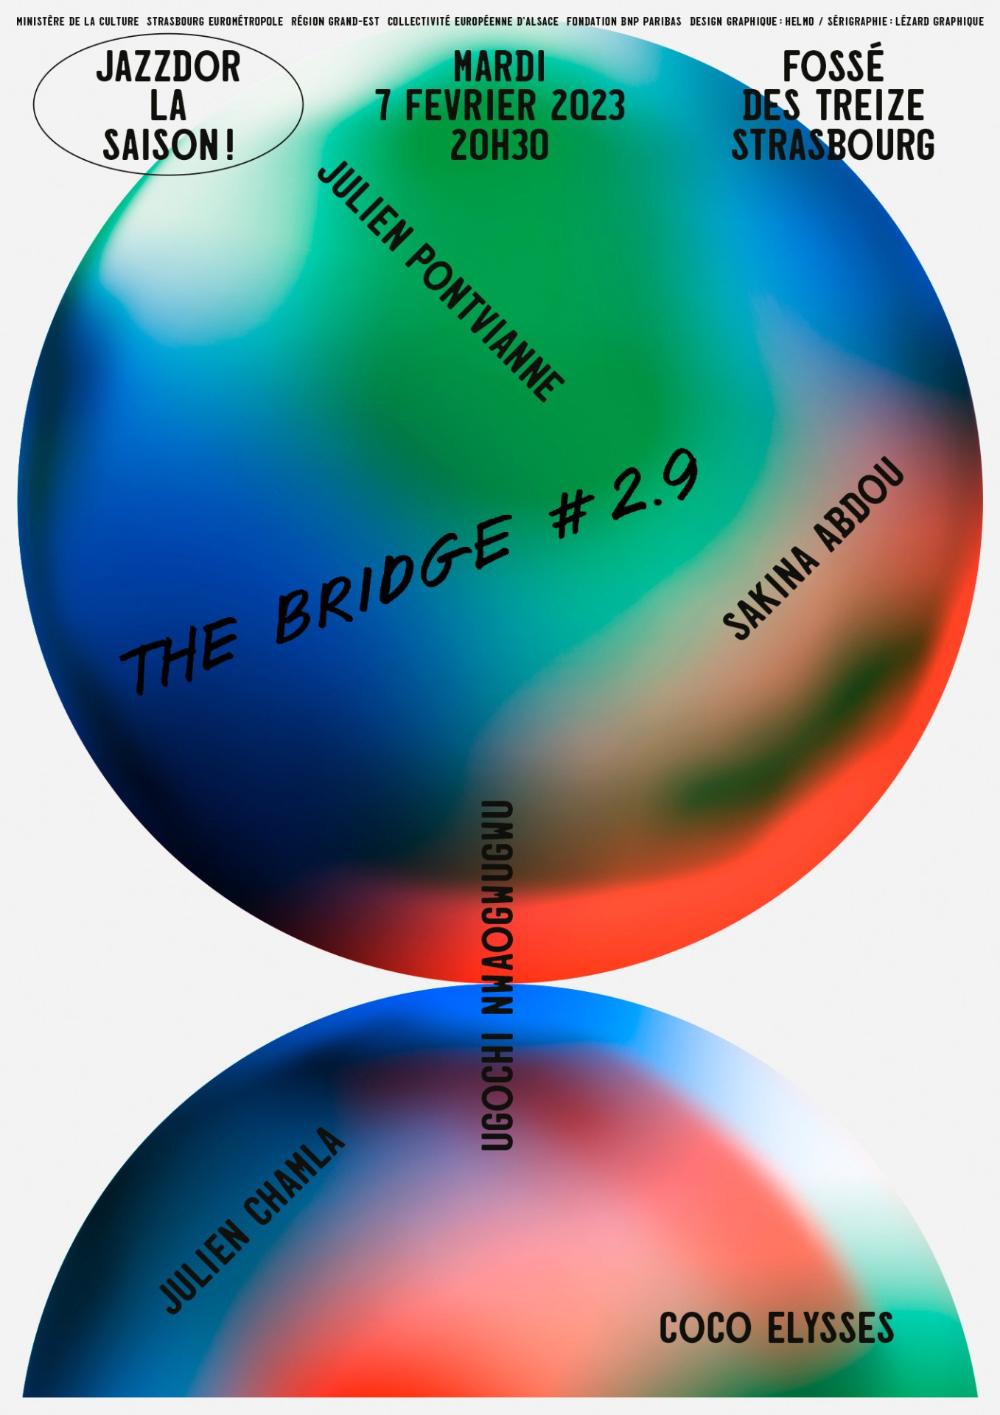 THE BRIDGE #2.9